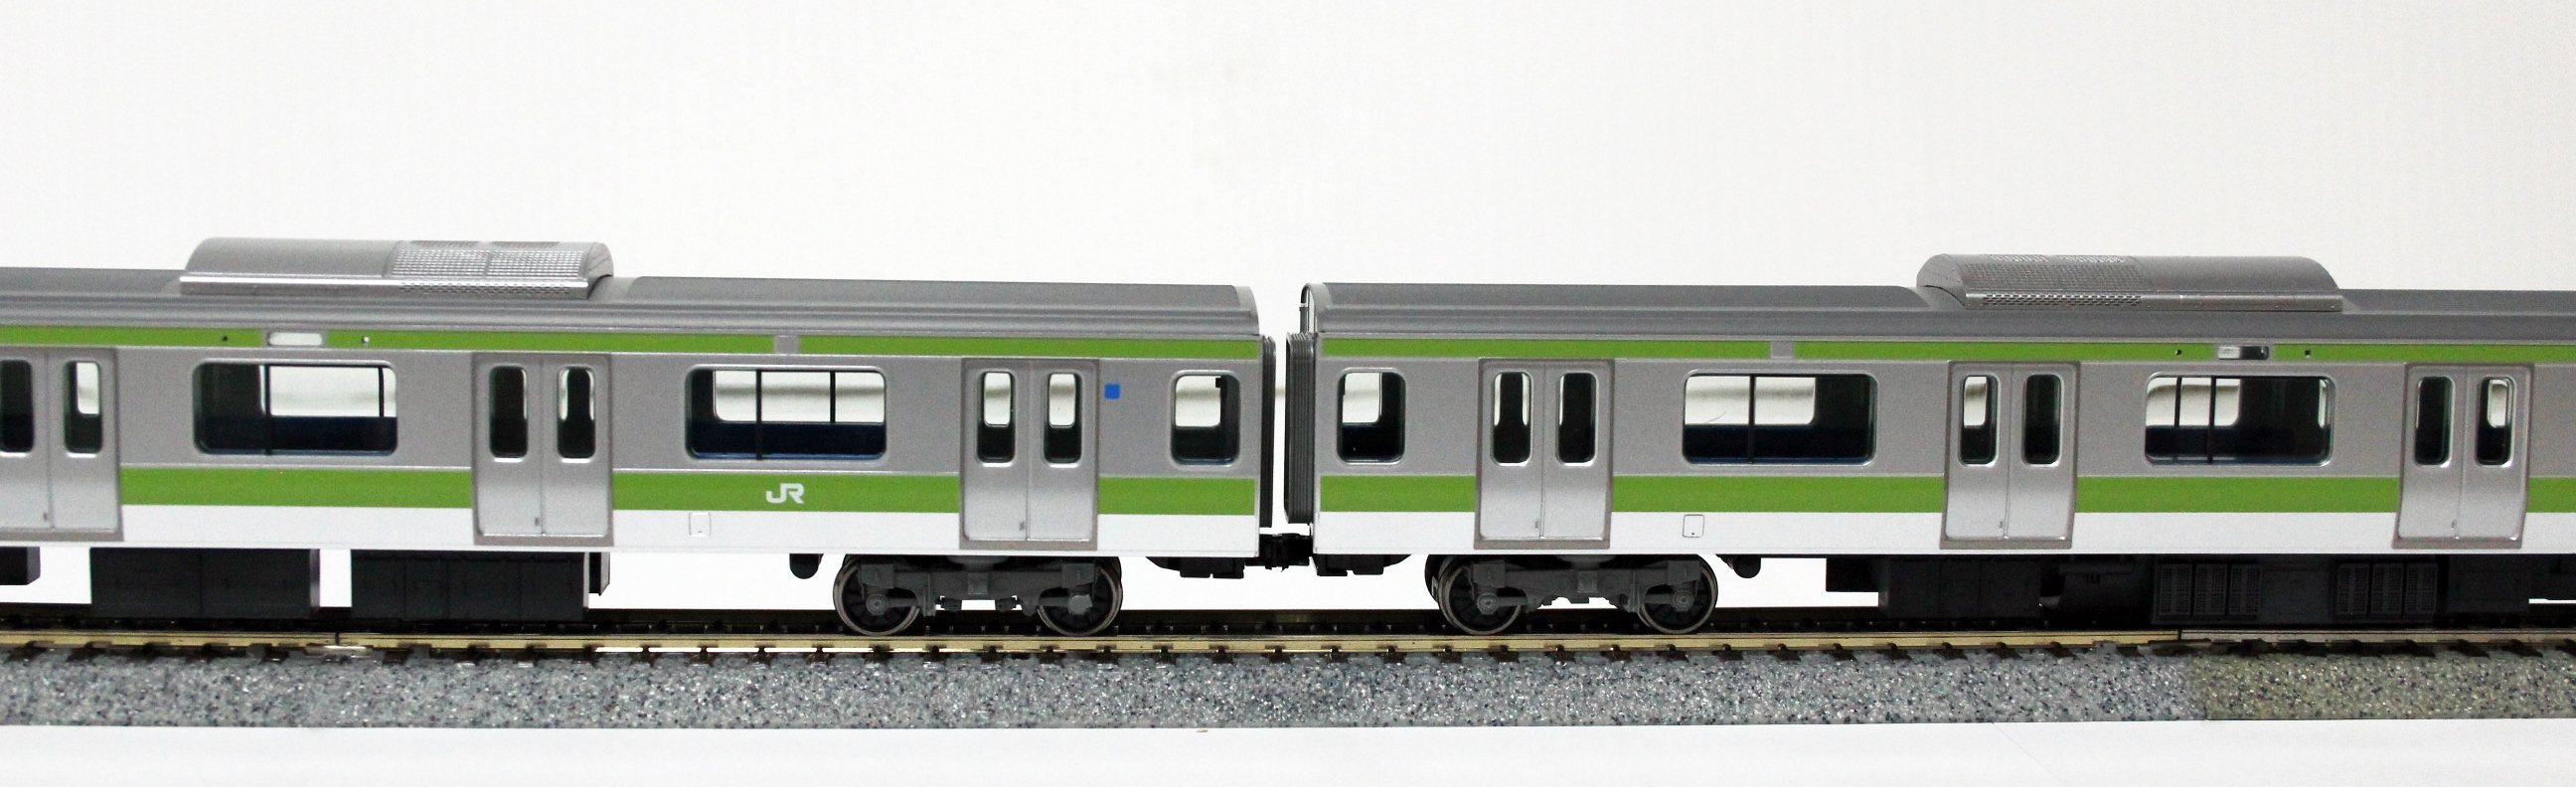 新作登場お得TOMIX HO-053 JR E231 500系 通勤電車(山手線) 基本セット HOゲージ 鉄道模型 中古 良好 M6504600 JR、国鉄車輌